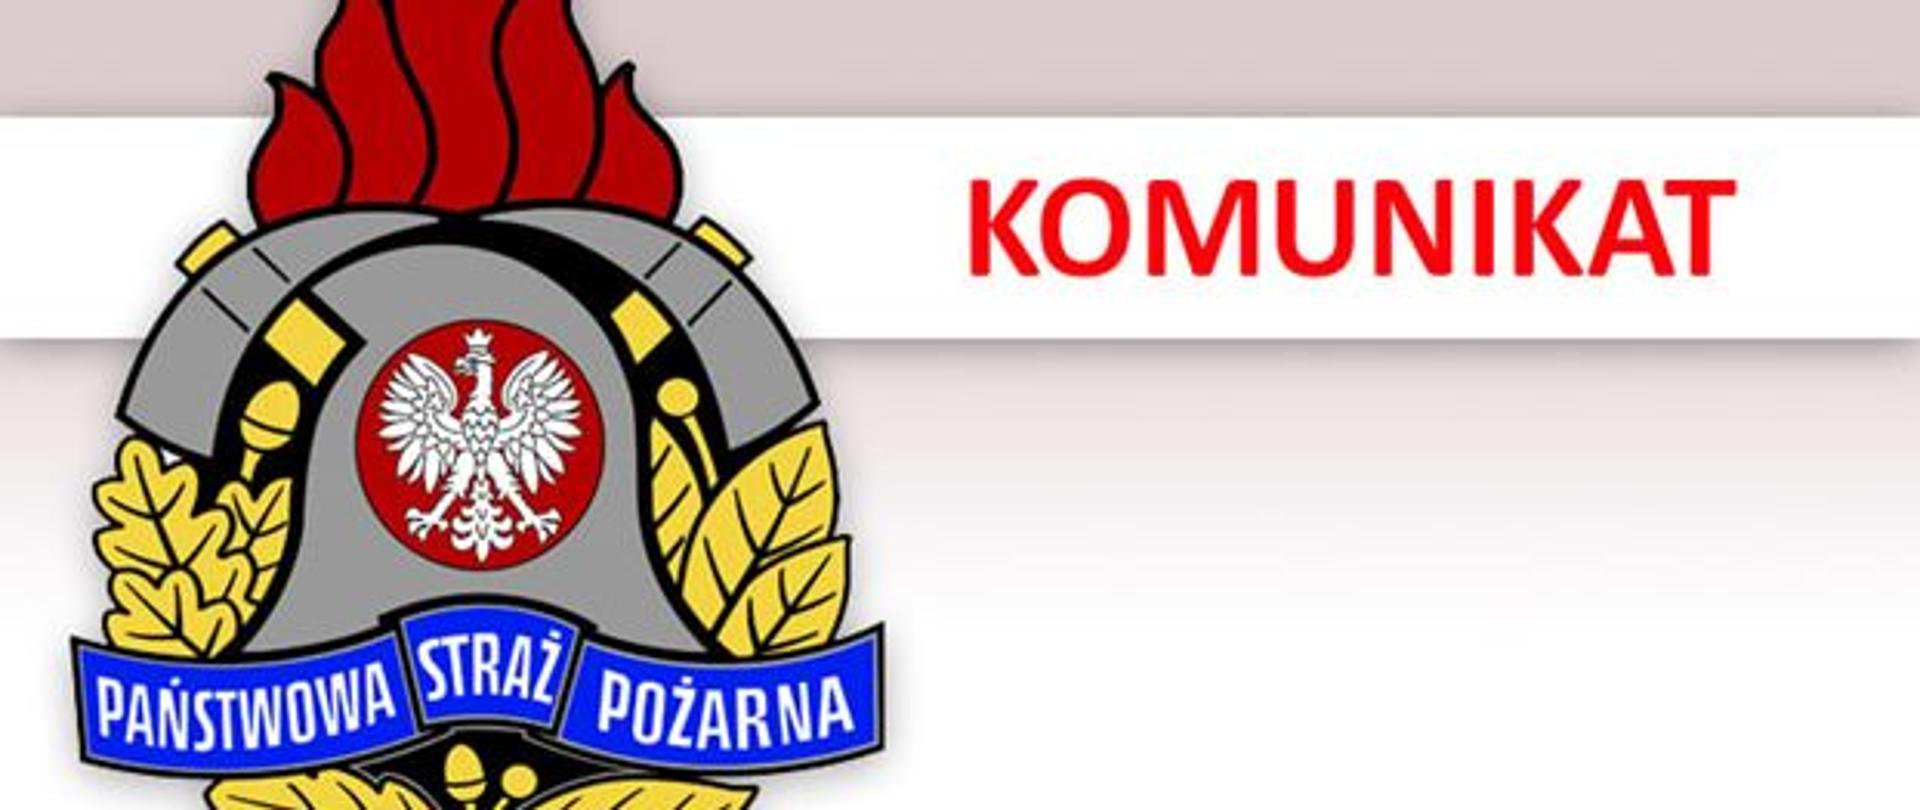 Obraz przedstawia logo PSP z czerwonym napisem KOMUNIKAT